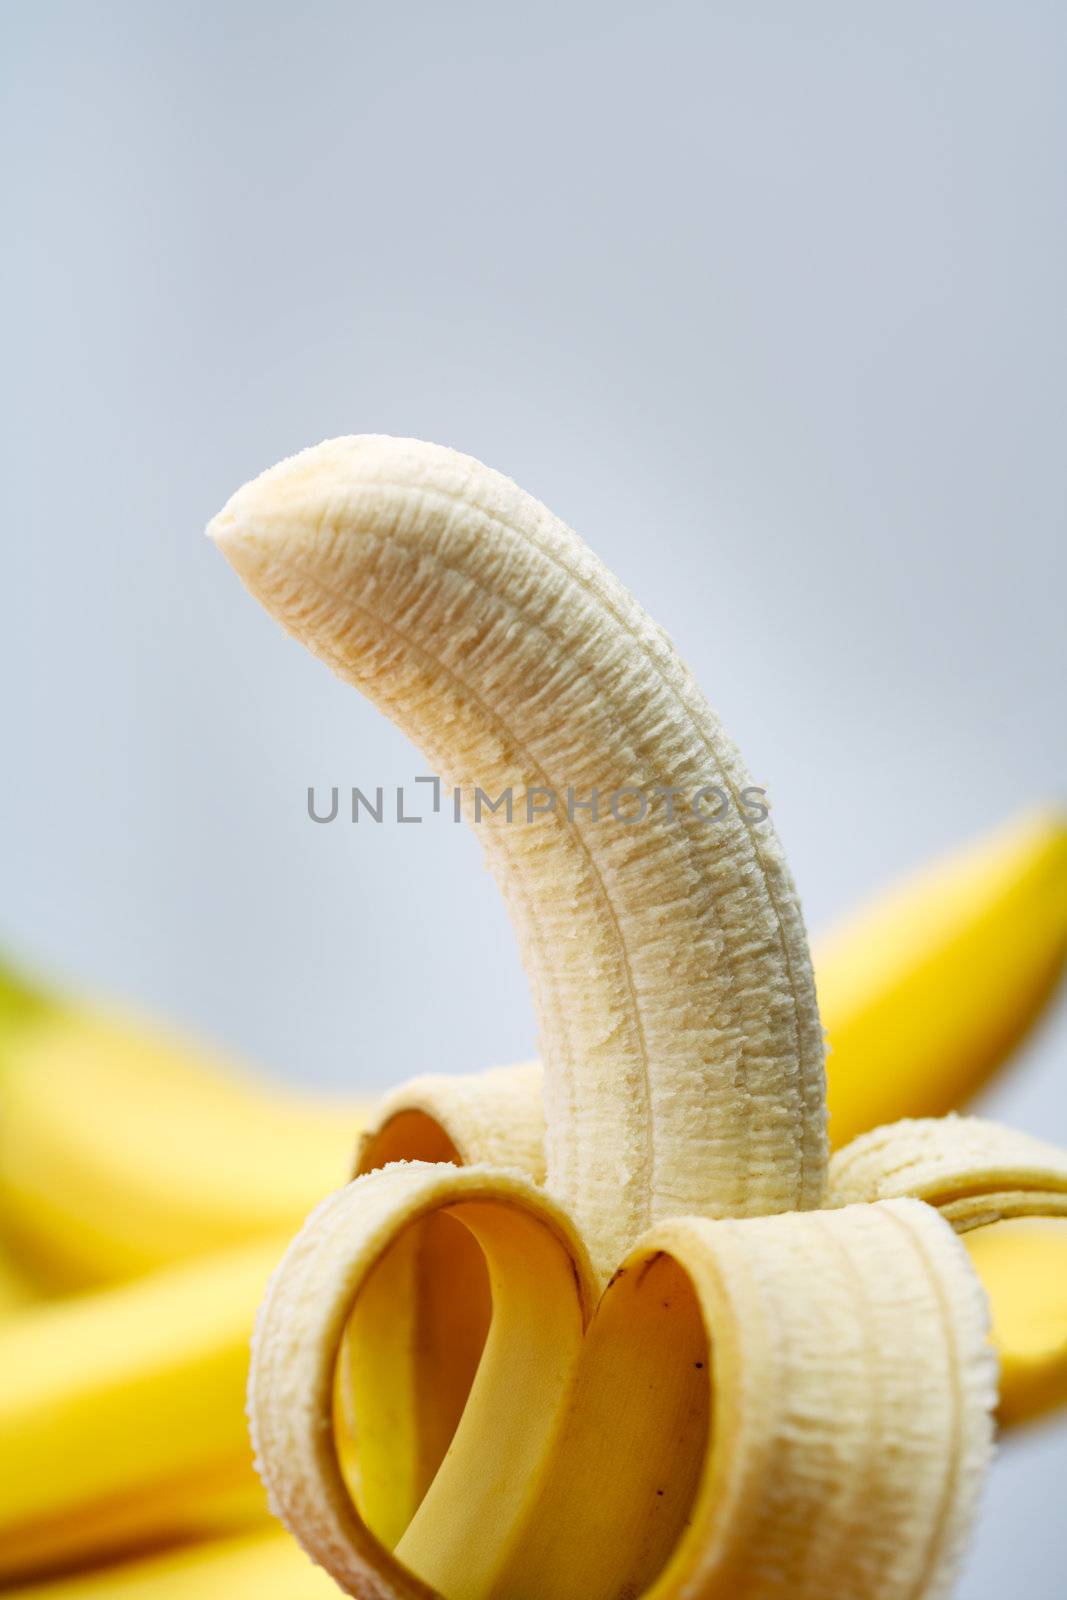 A Peeled banana, ready to eat.